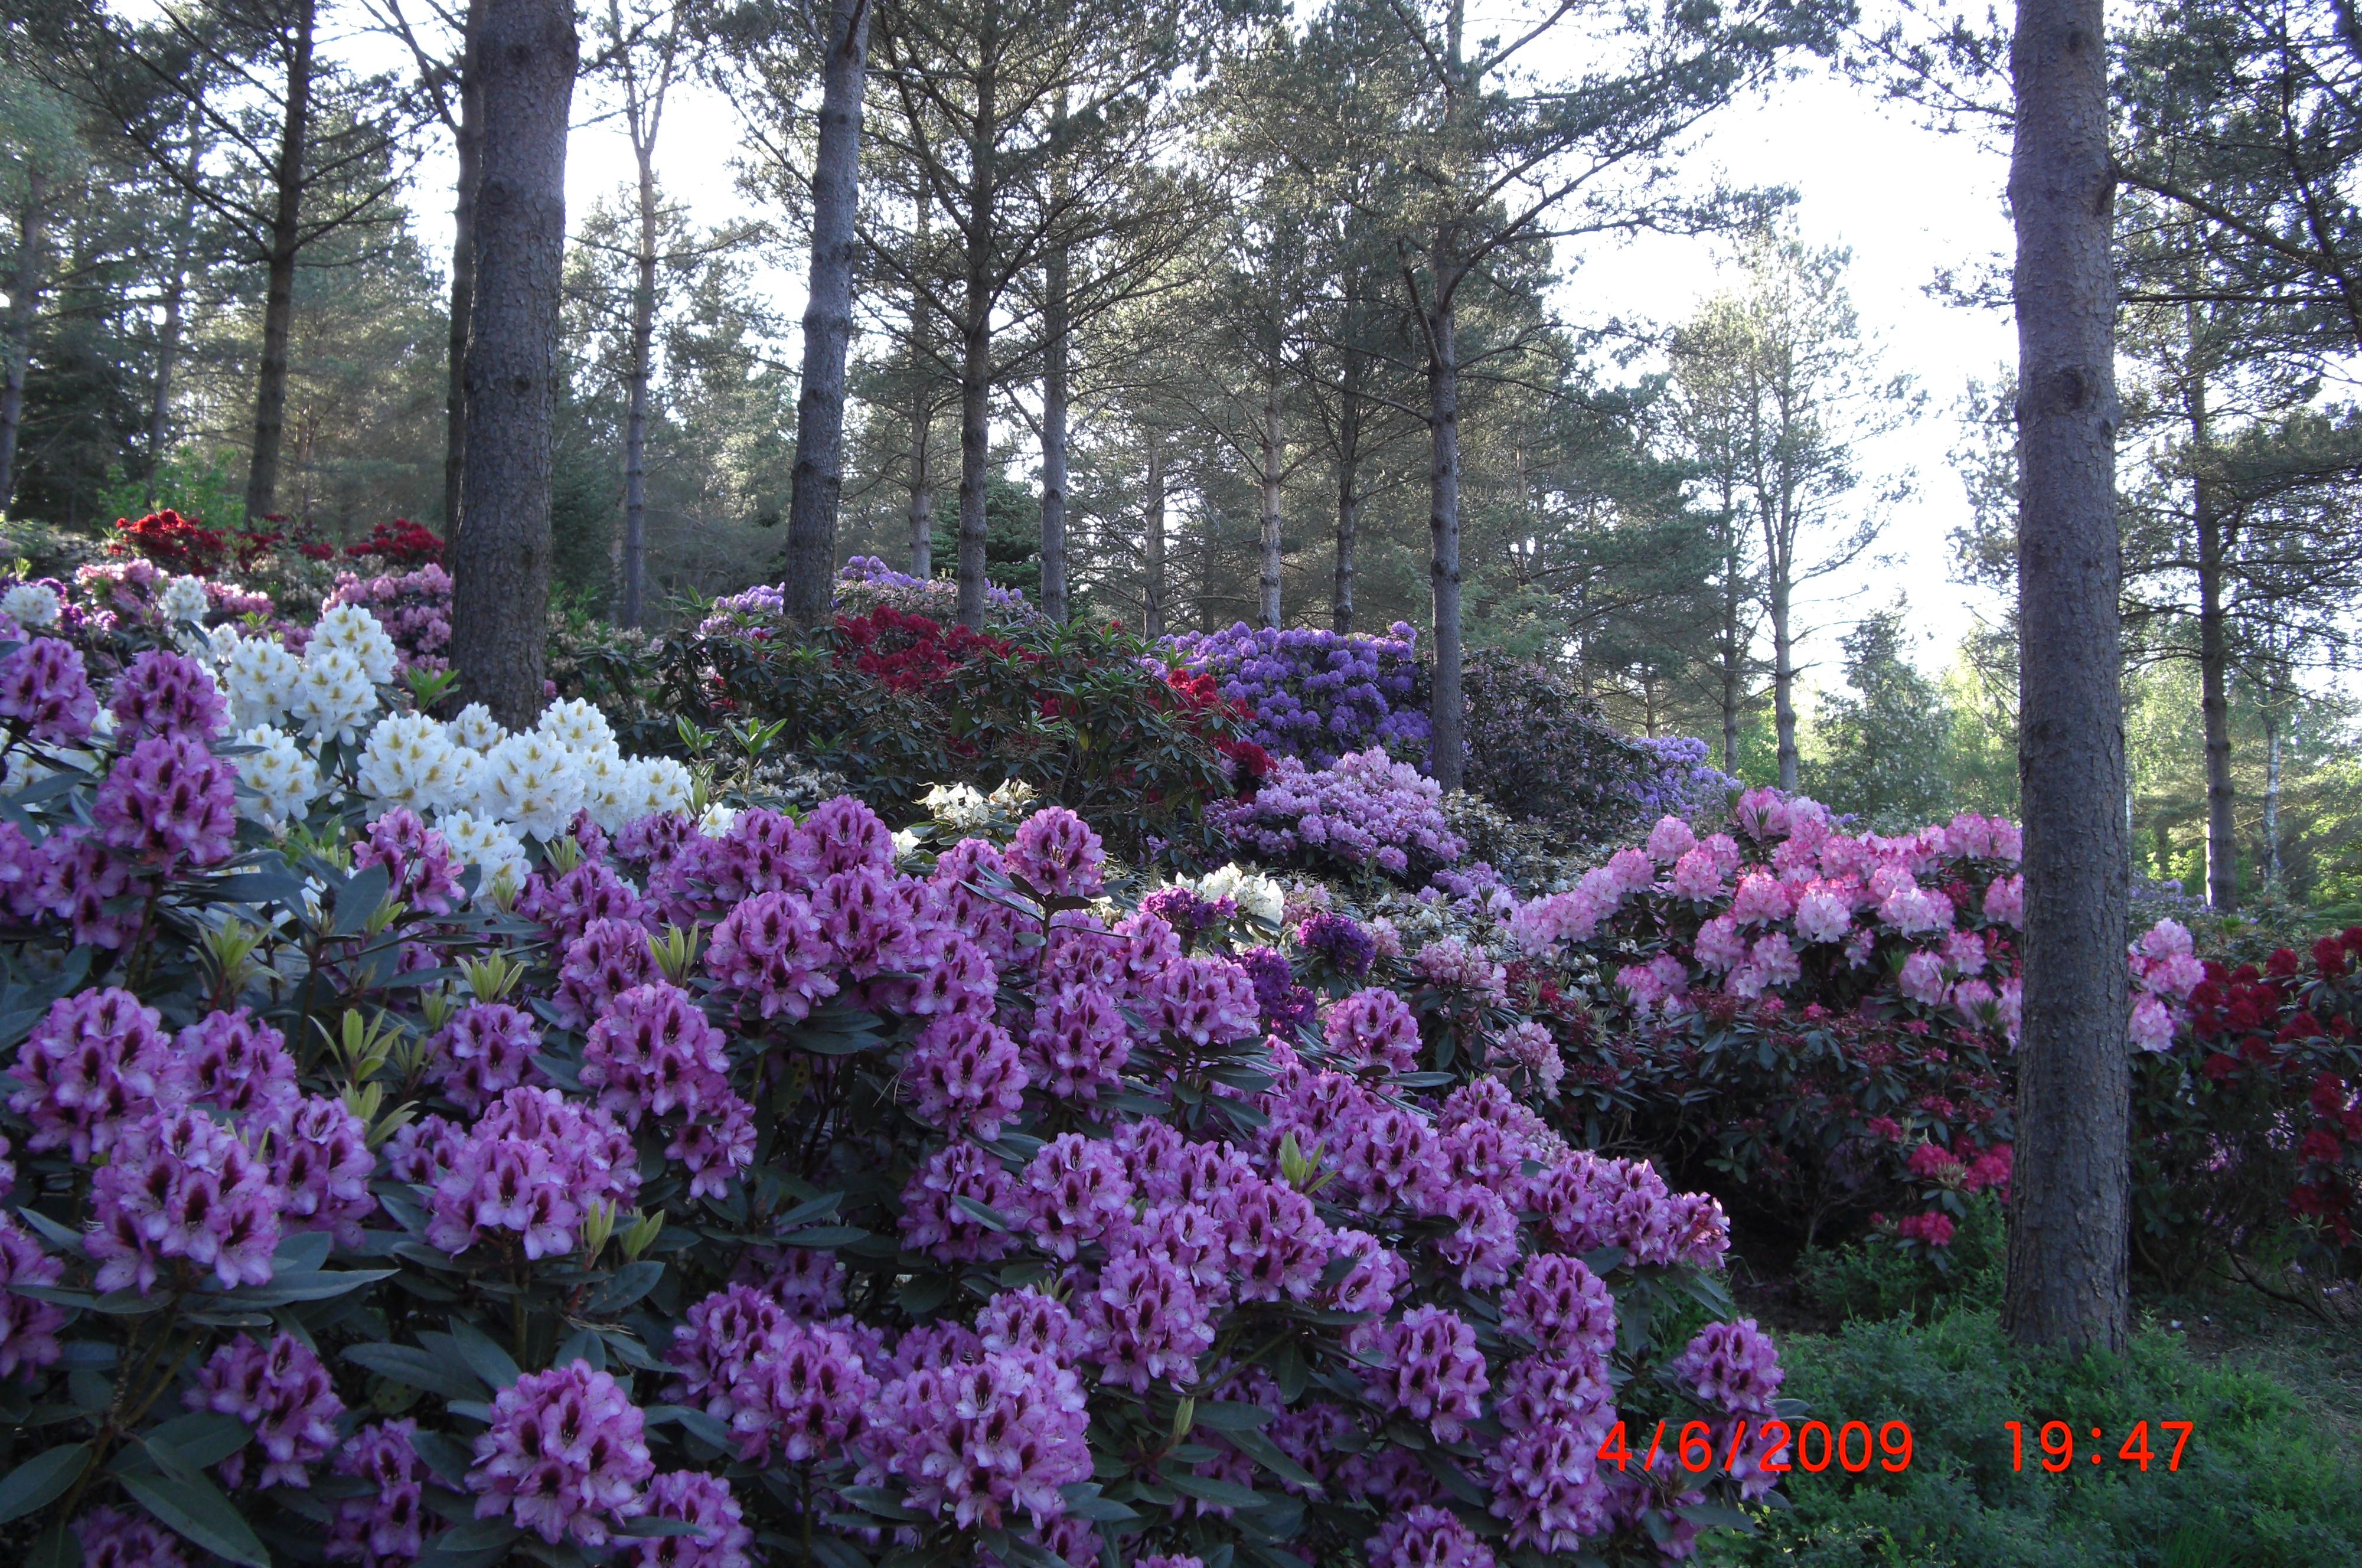 Rhododendron 'Kokardia' i forgrunnen